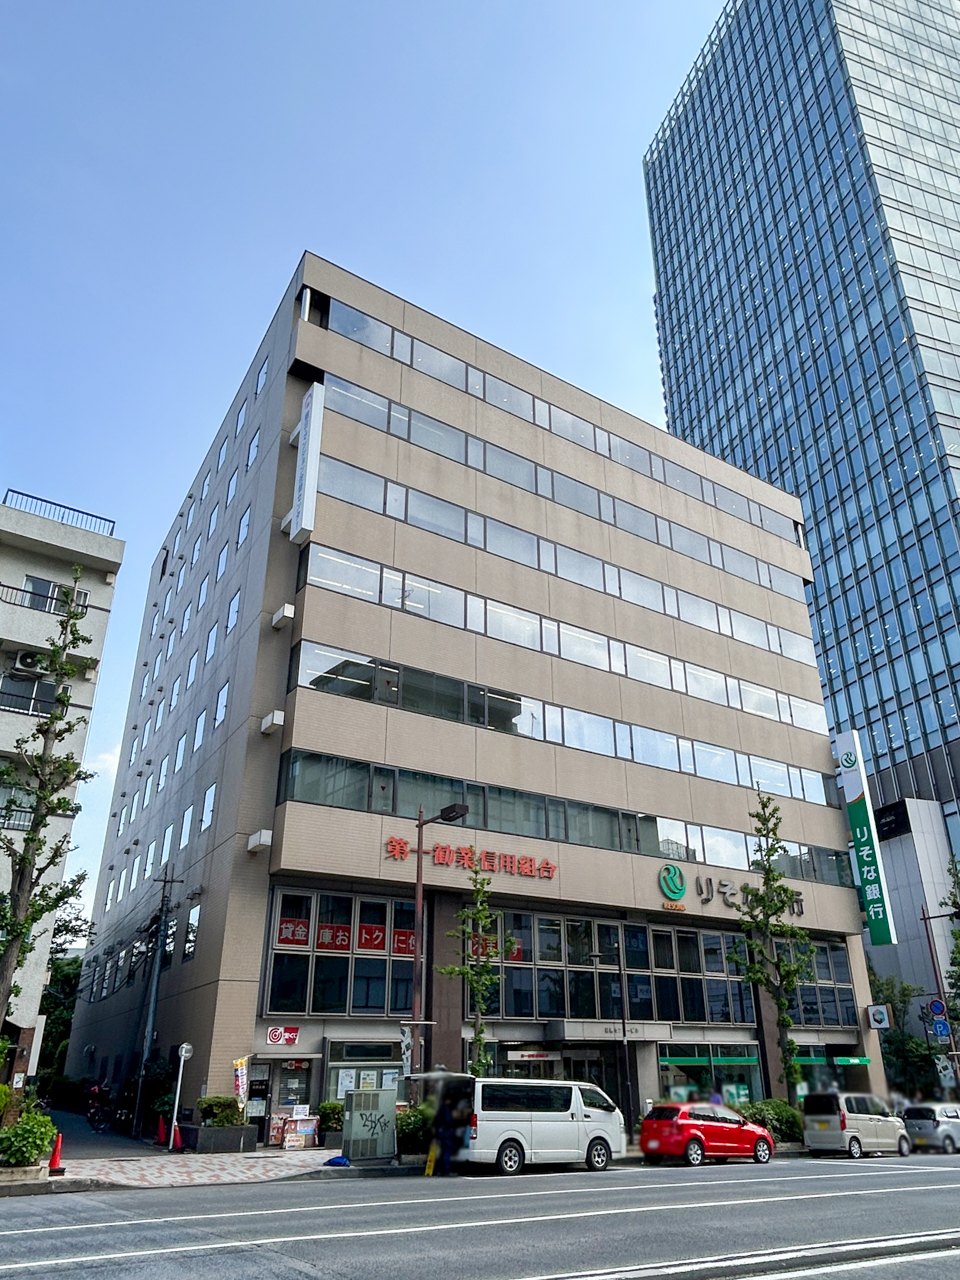 SENQ MEGURO (Meguro Center Building 8th floor)